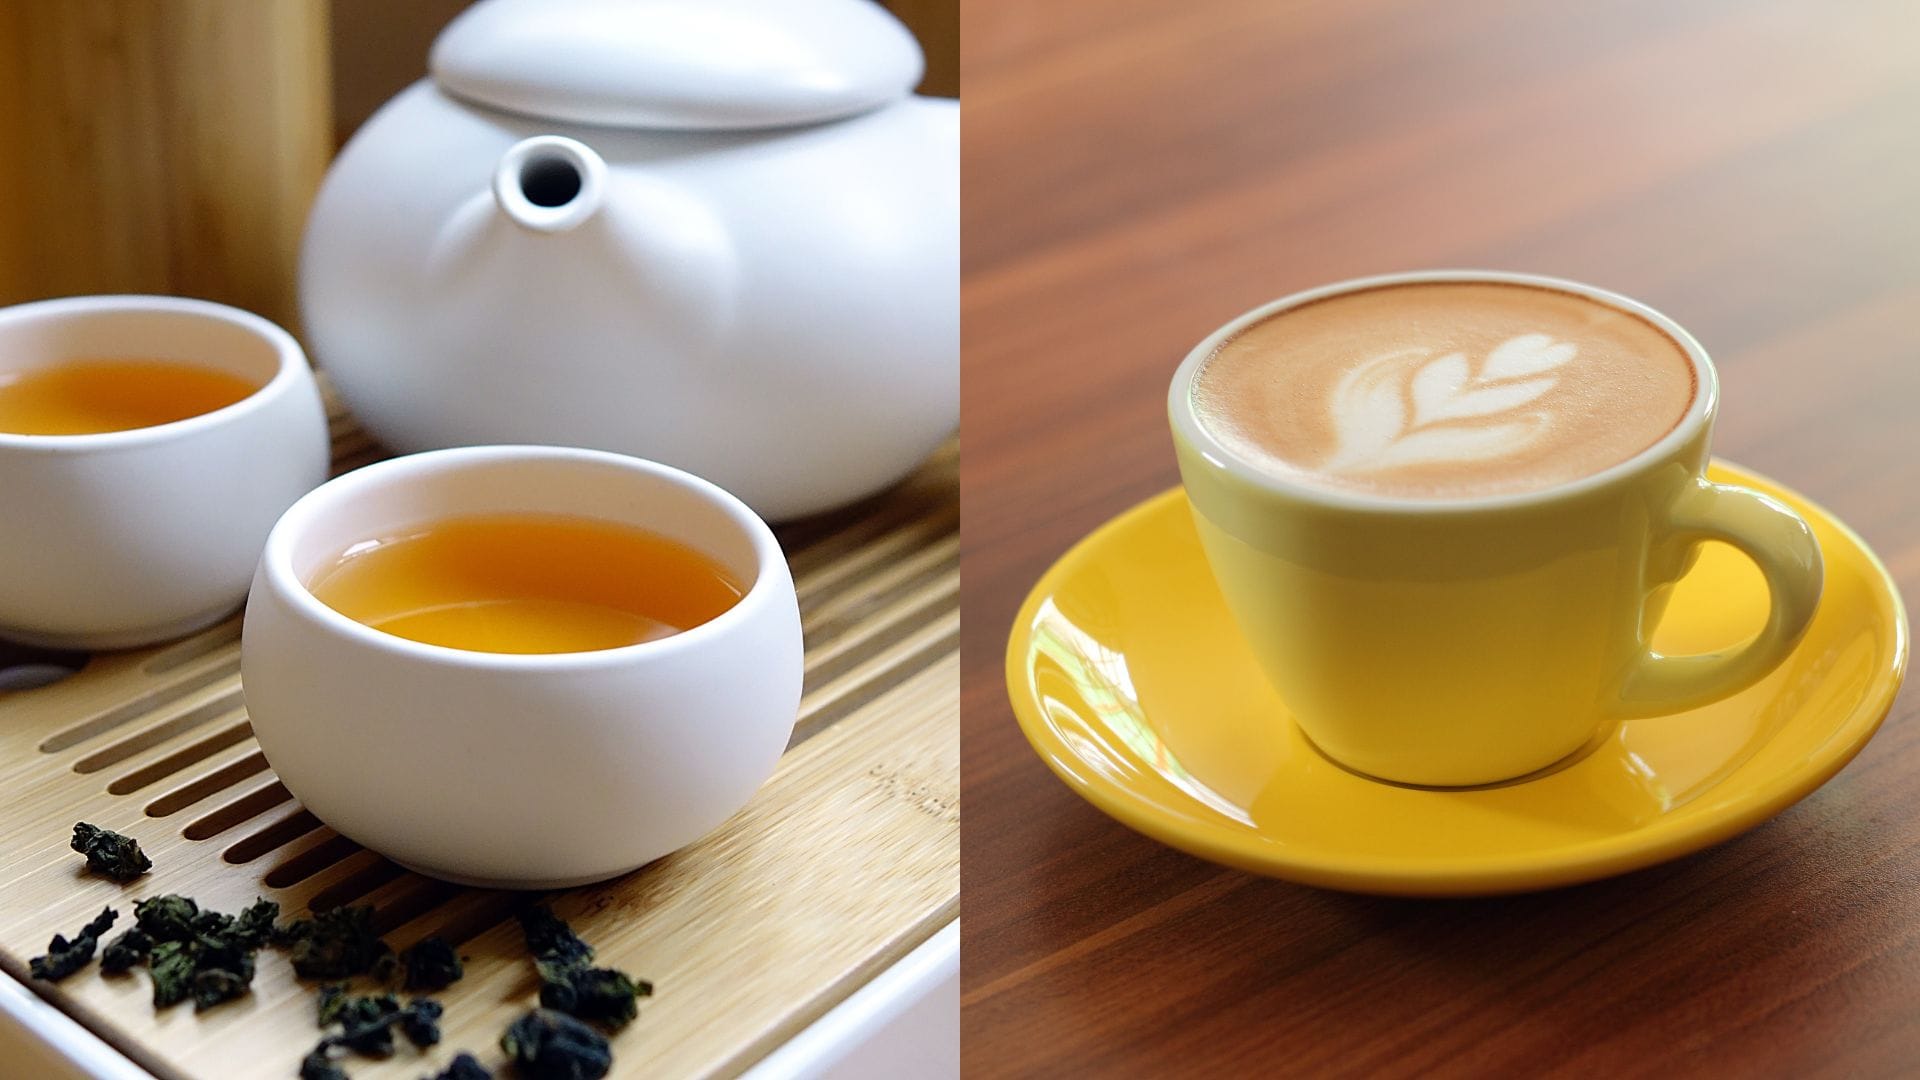 Oolong Tea vs. Coffee